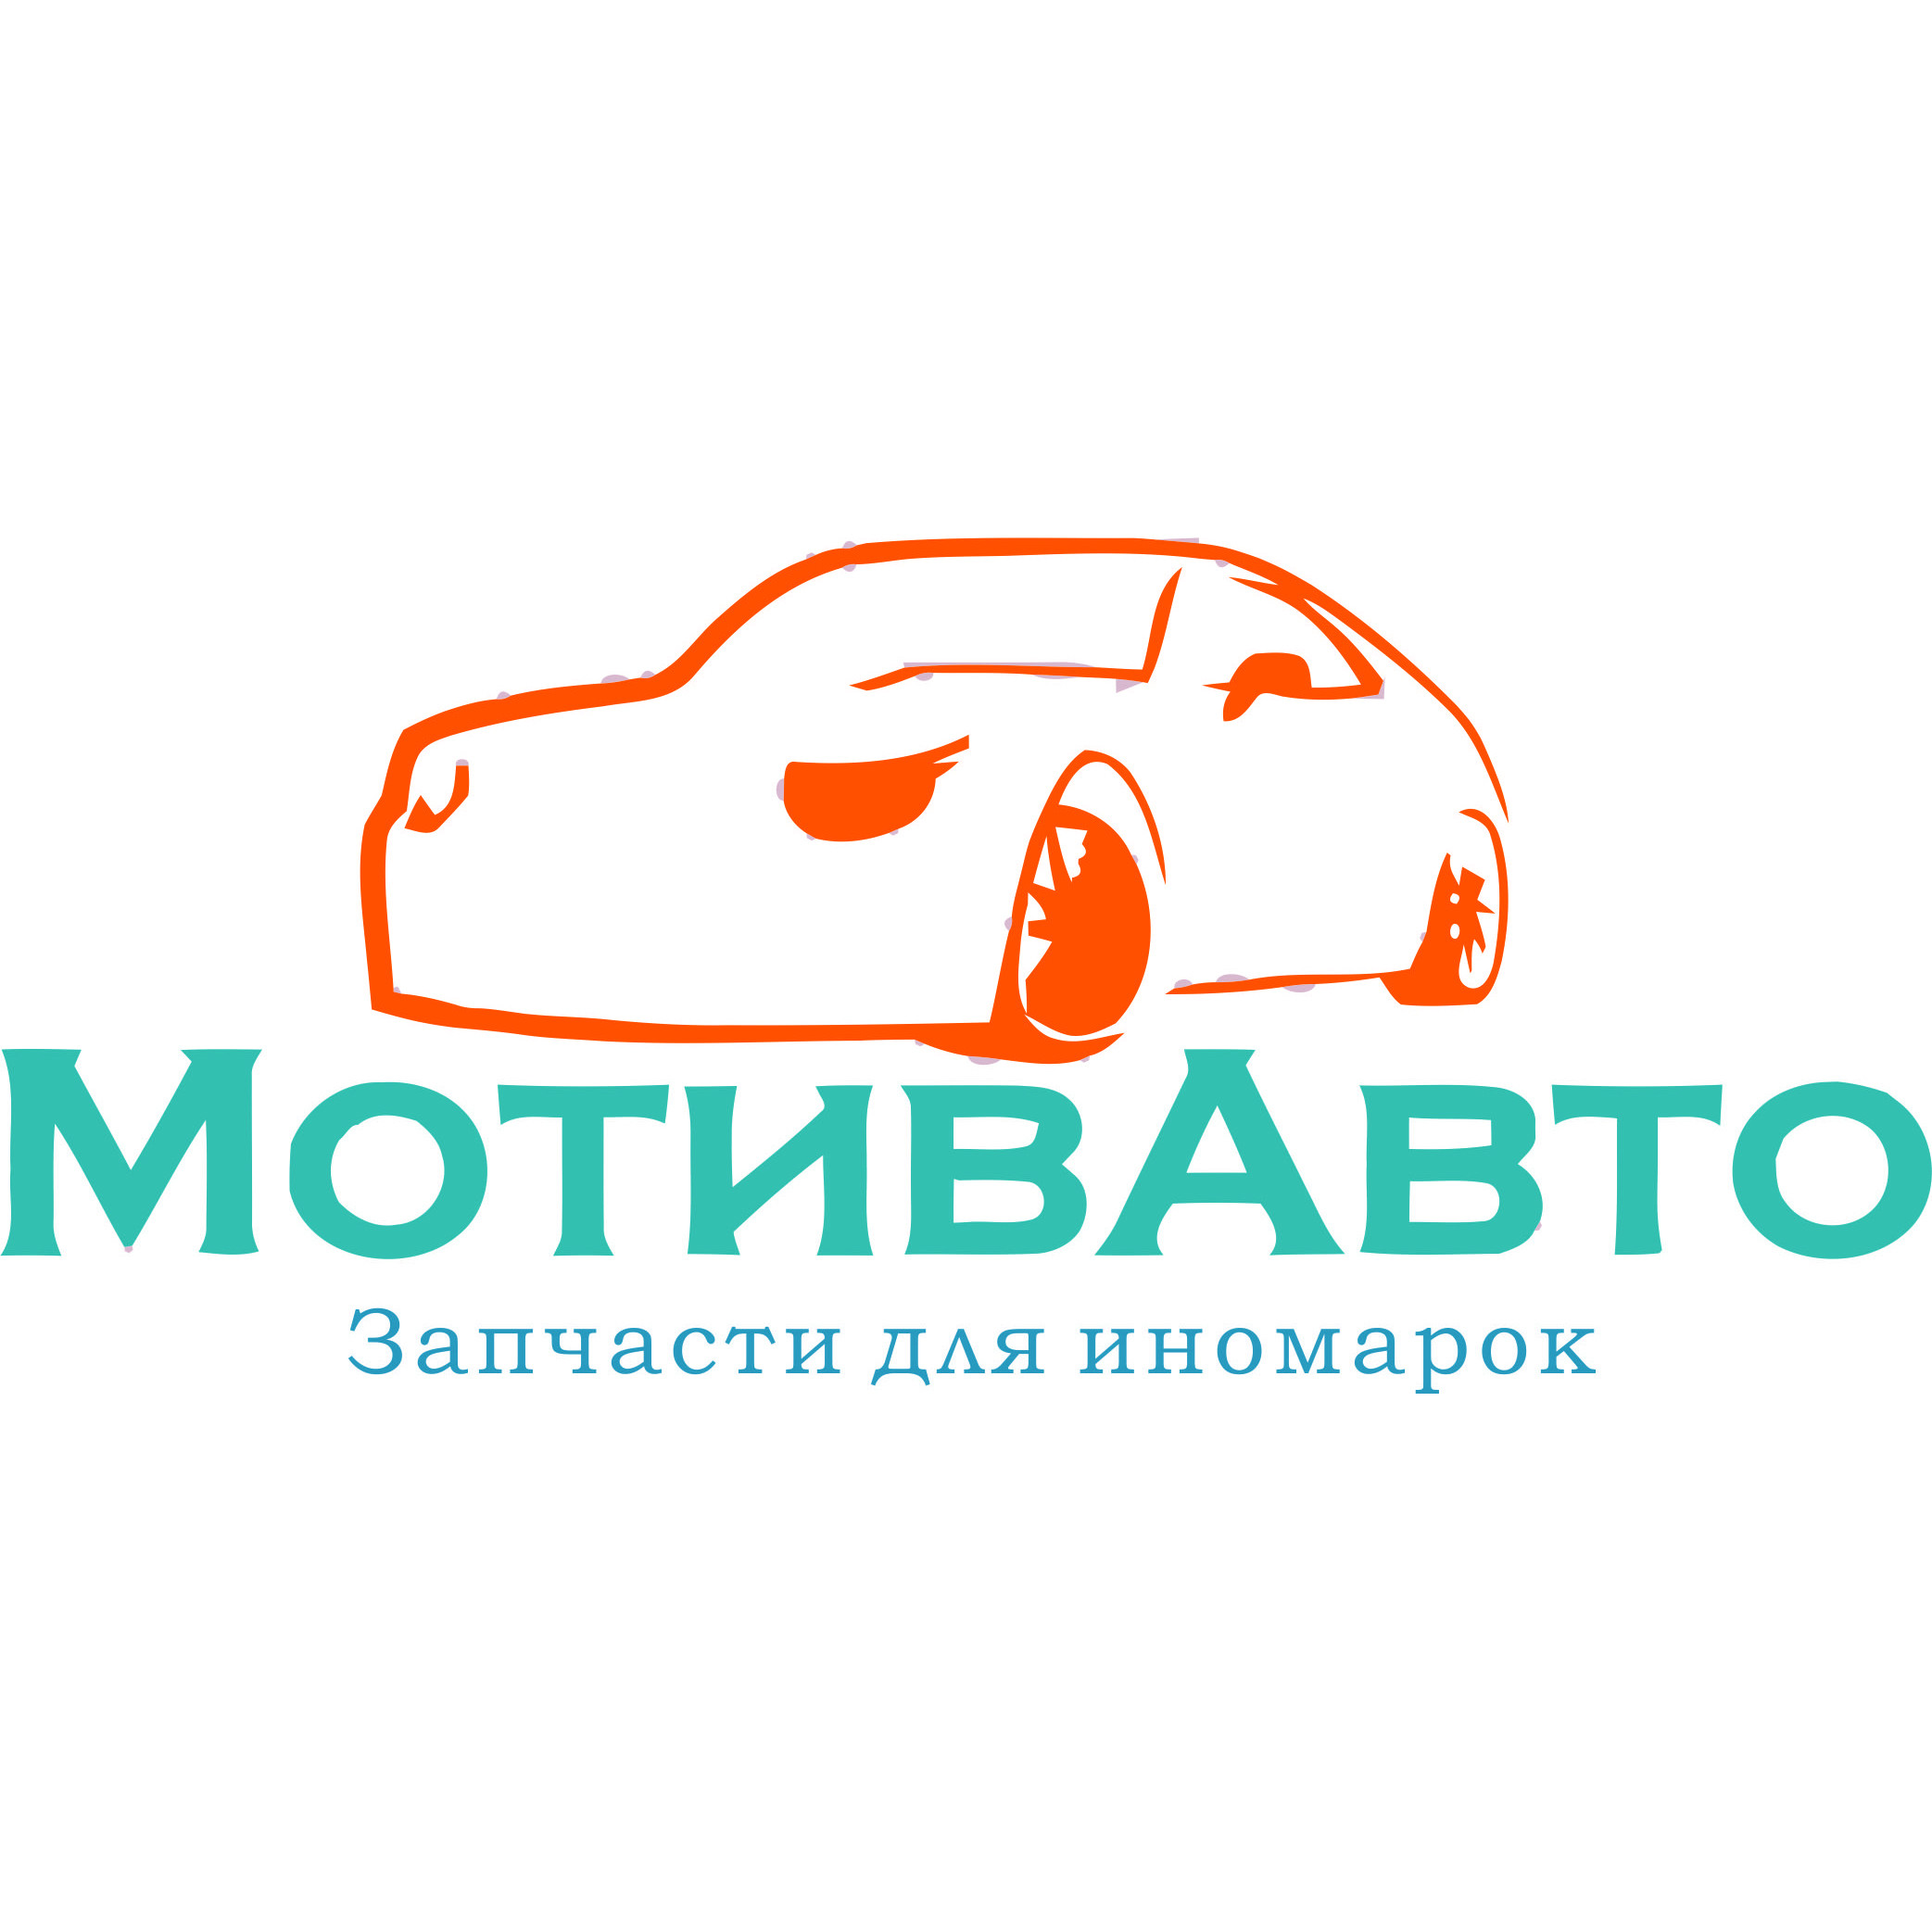 С личным автомобилем екатеринбург. Мотив машина. Логотип для интернет магазина автомобилей. Авто Екатеринбург. Магазин автозапчастей Екатеринбург логотип.